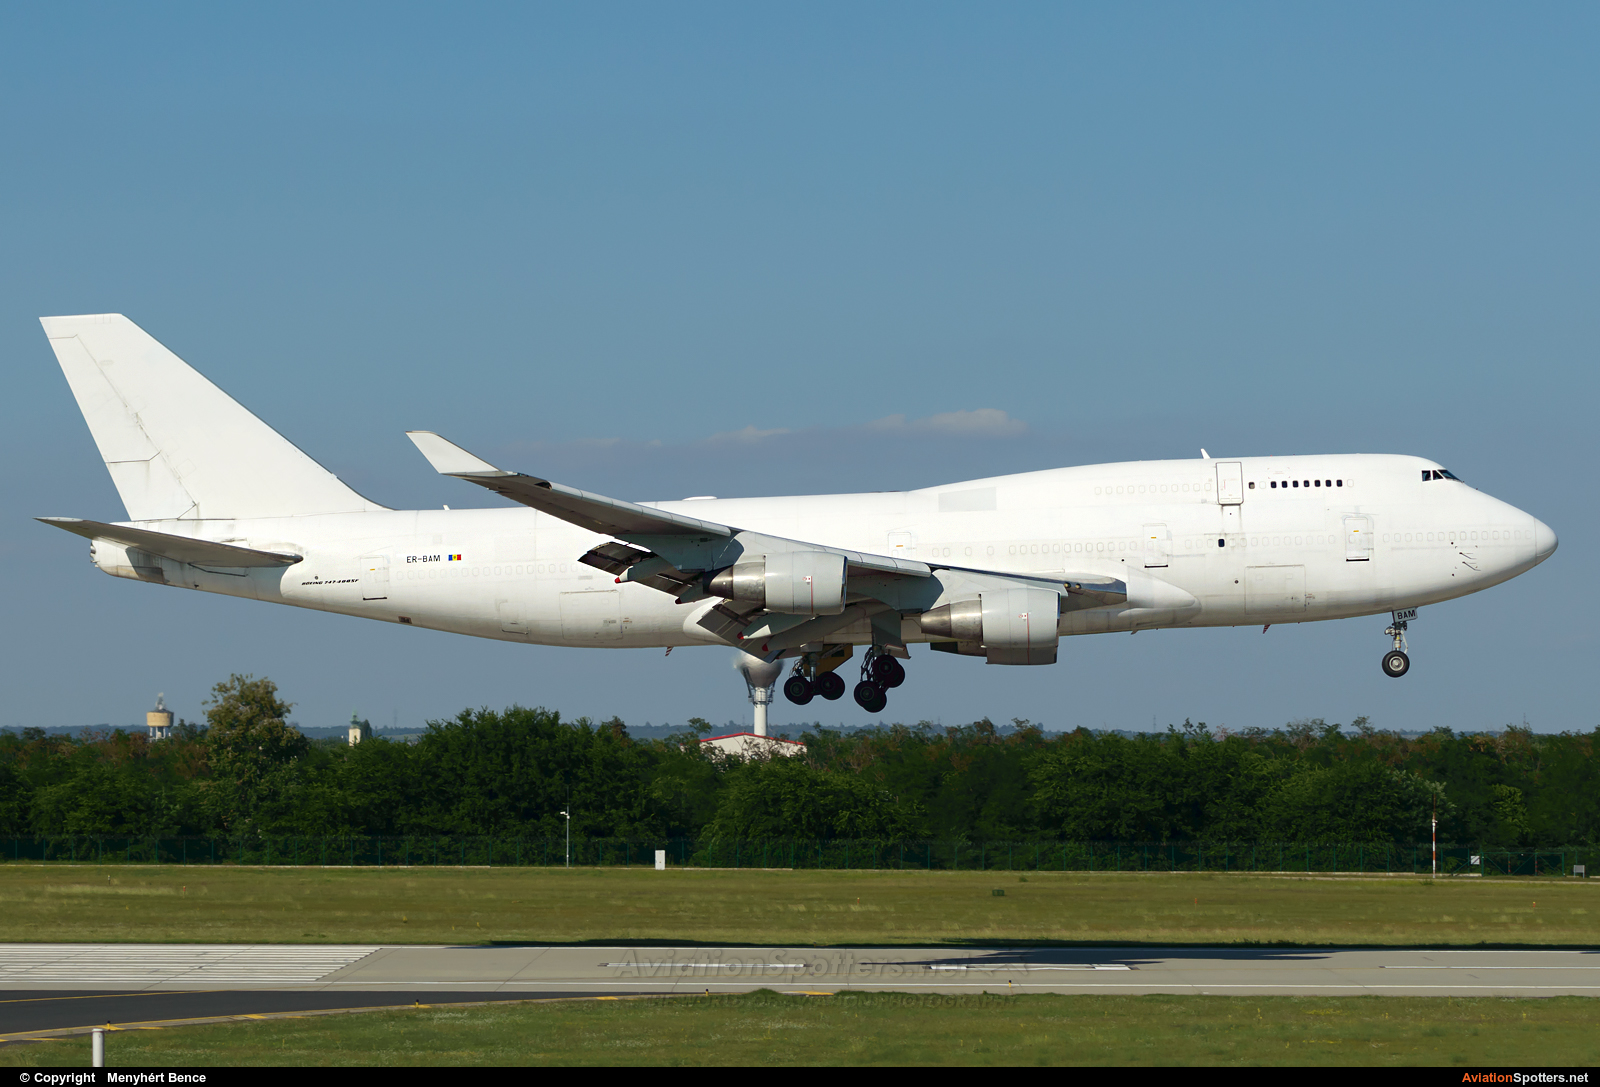 AeroTrans Cargo  -  747-400F  (ER-BAM) By Menyhért Bence (hadesdras91)